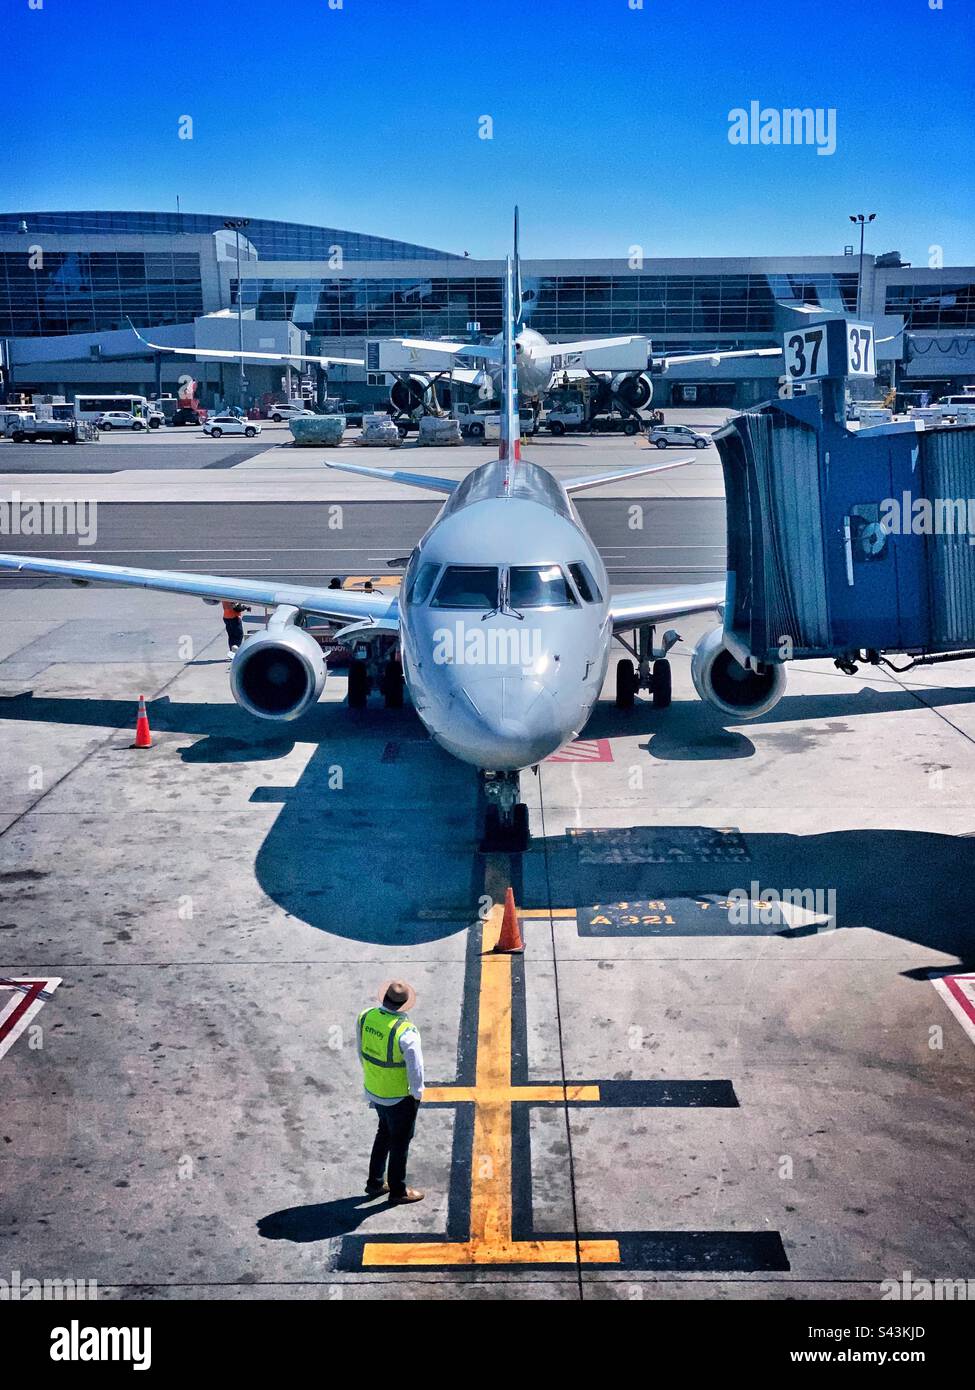 Un avion se met à la porte d'embarquement du terminal 8 des compagnies aériennes américaines de l'aéroport JFK John F Kennedy de New York. Banque D'Images